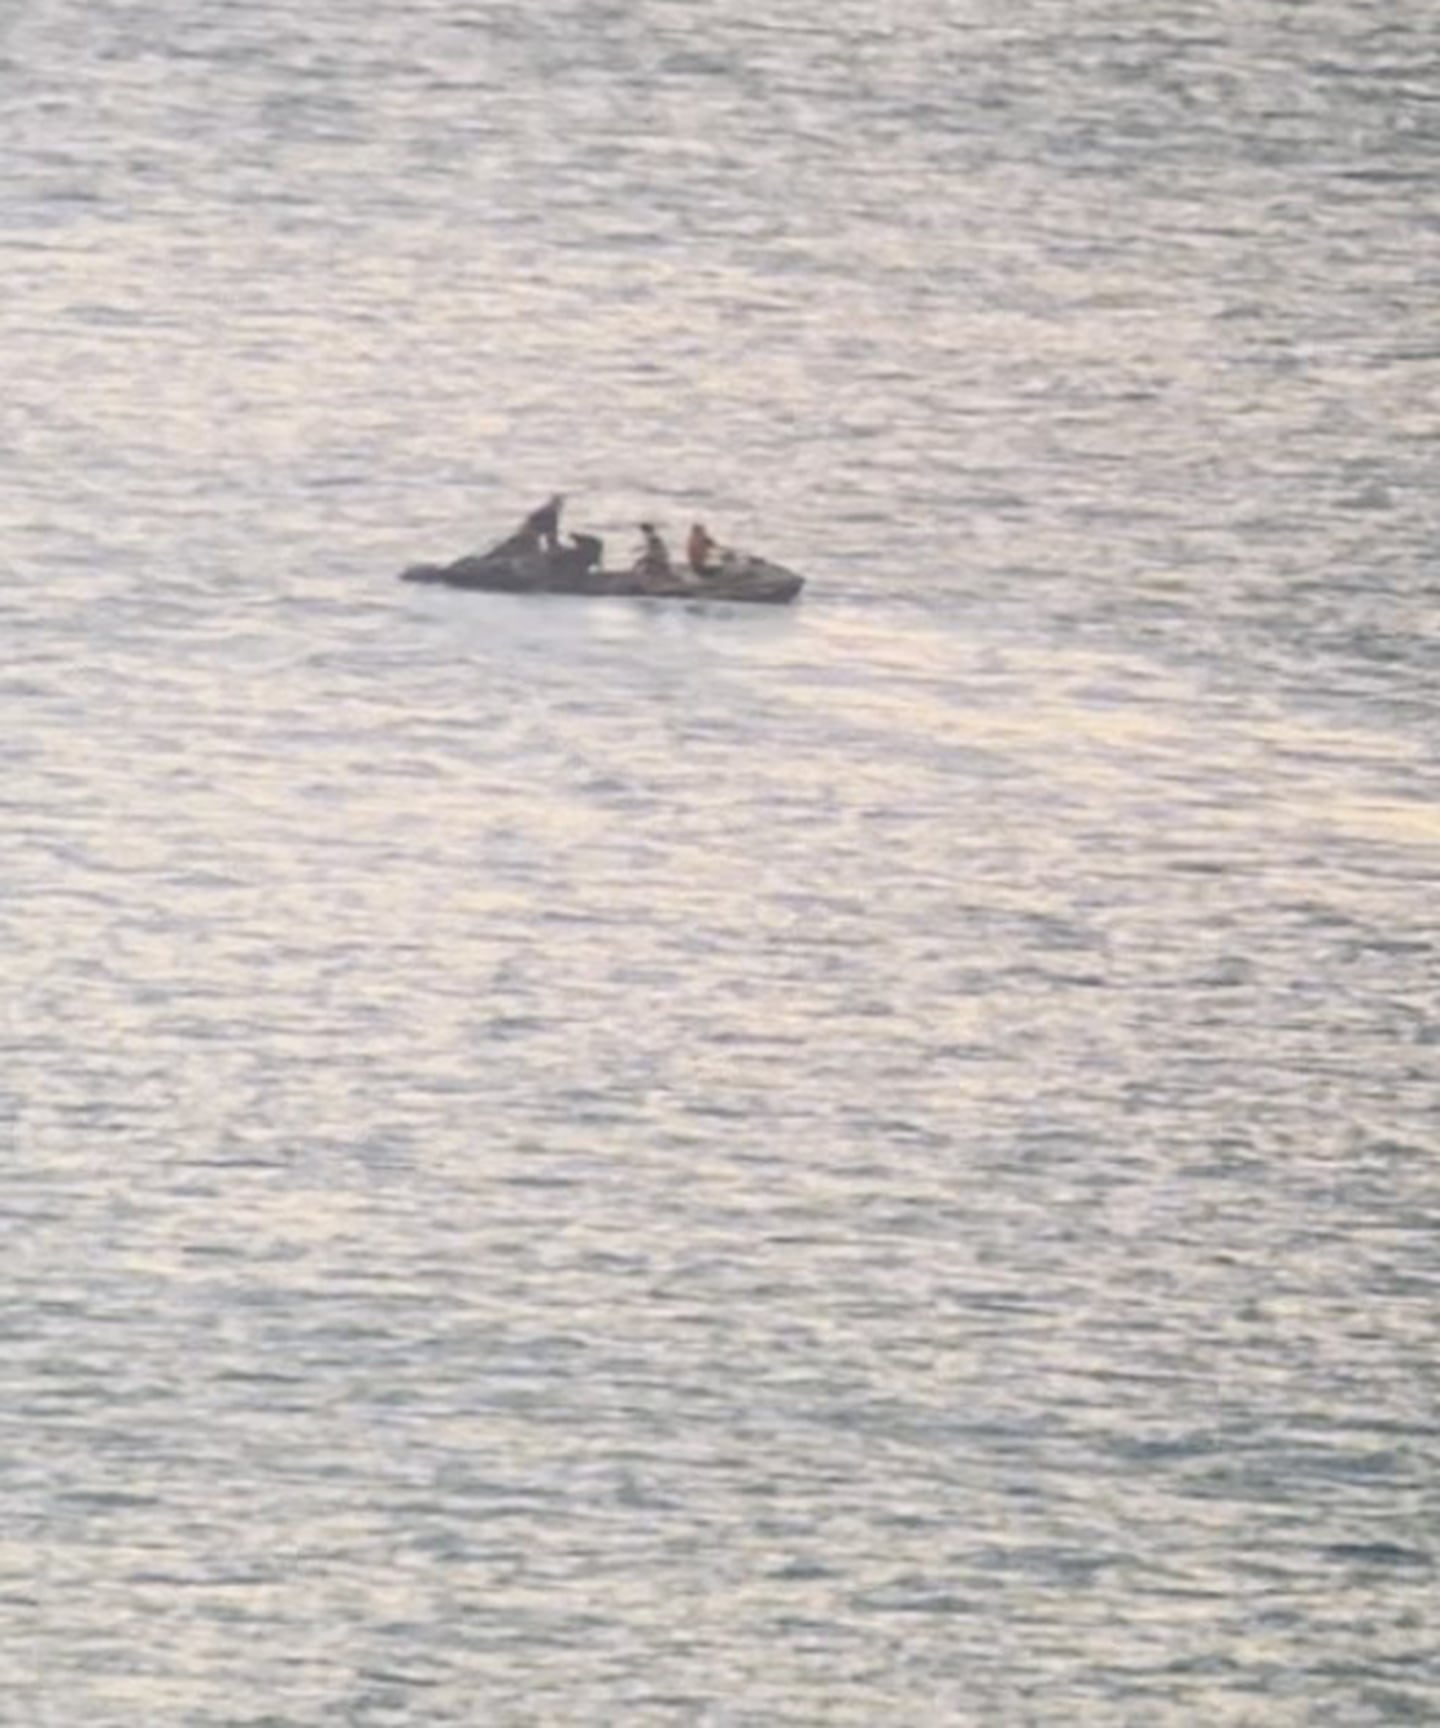 两名乘坐水上摩托艇的冲浪者首先冲向跳伞运动员。 照片/提供